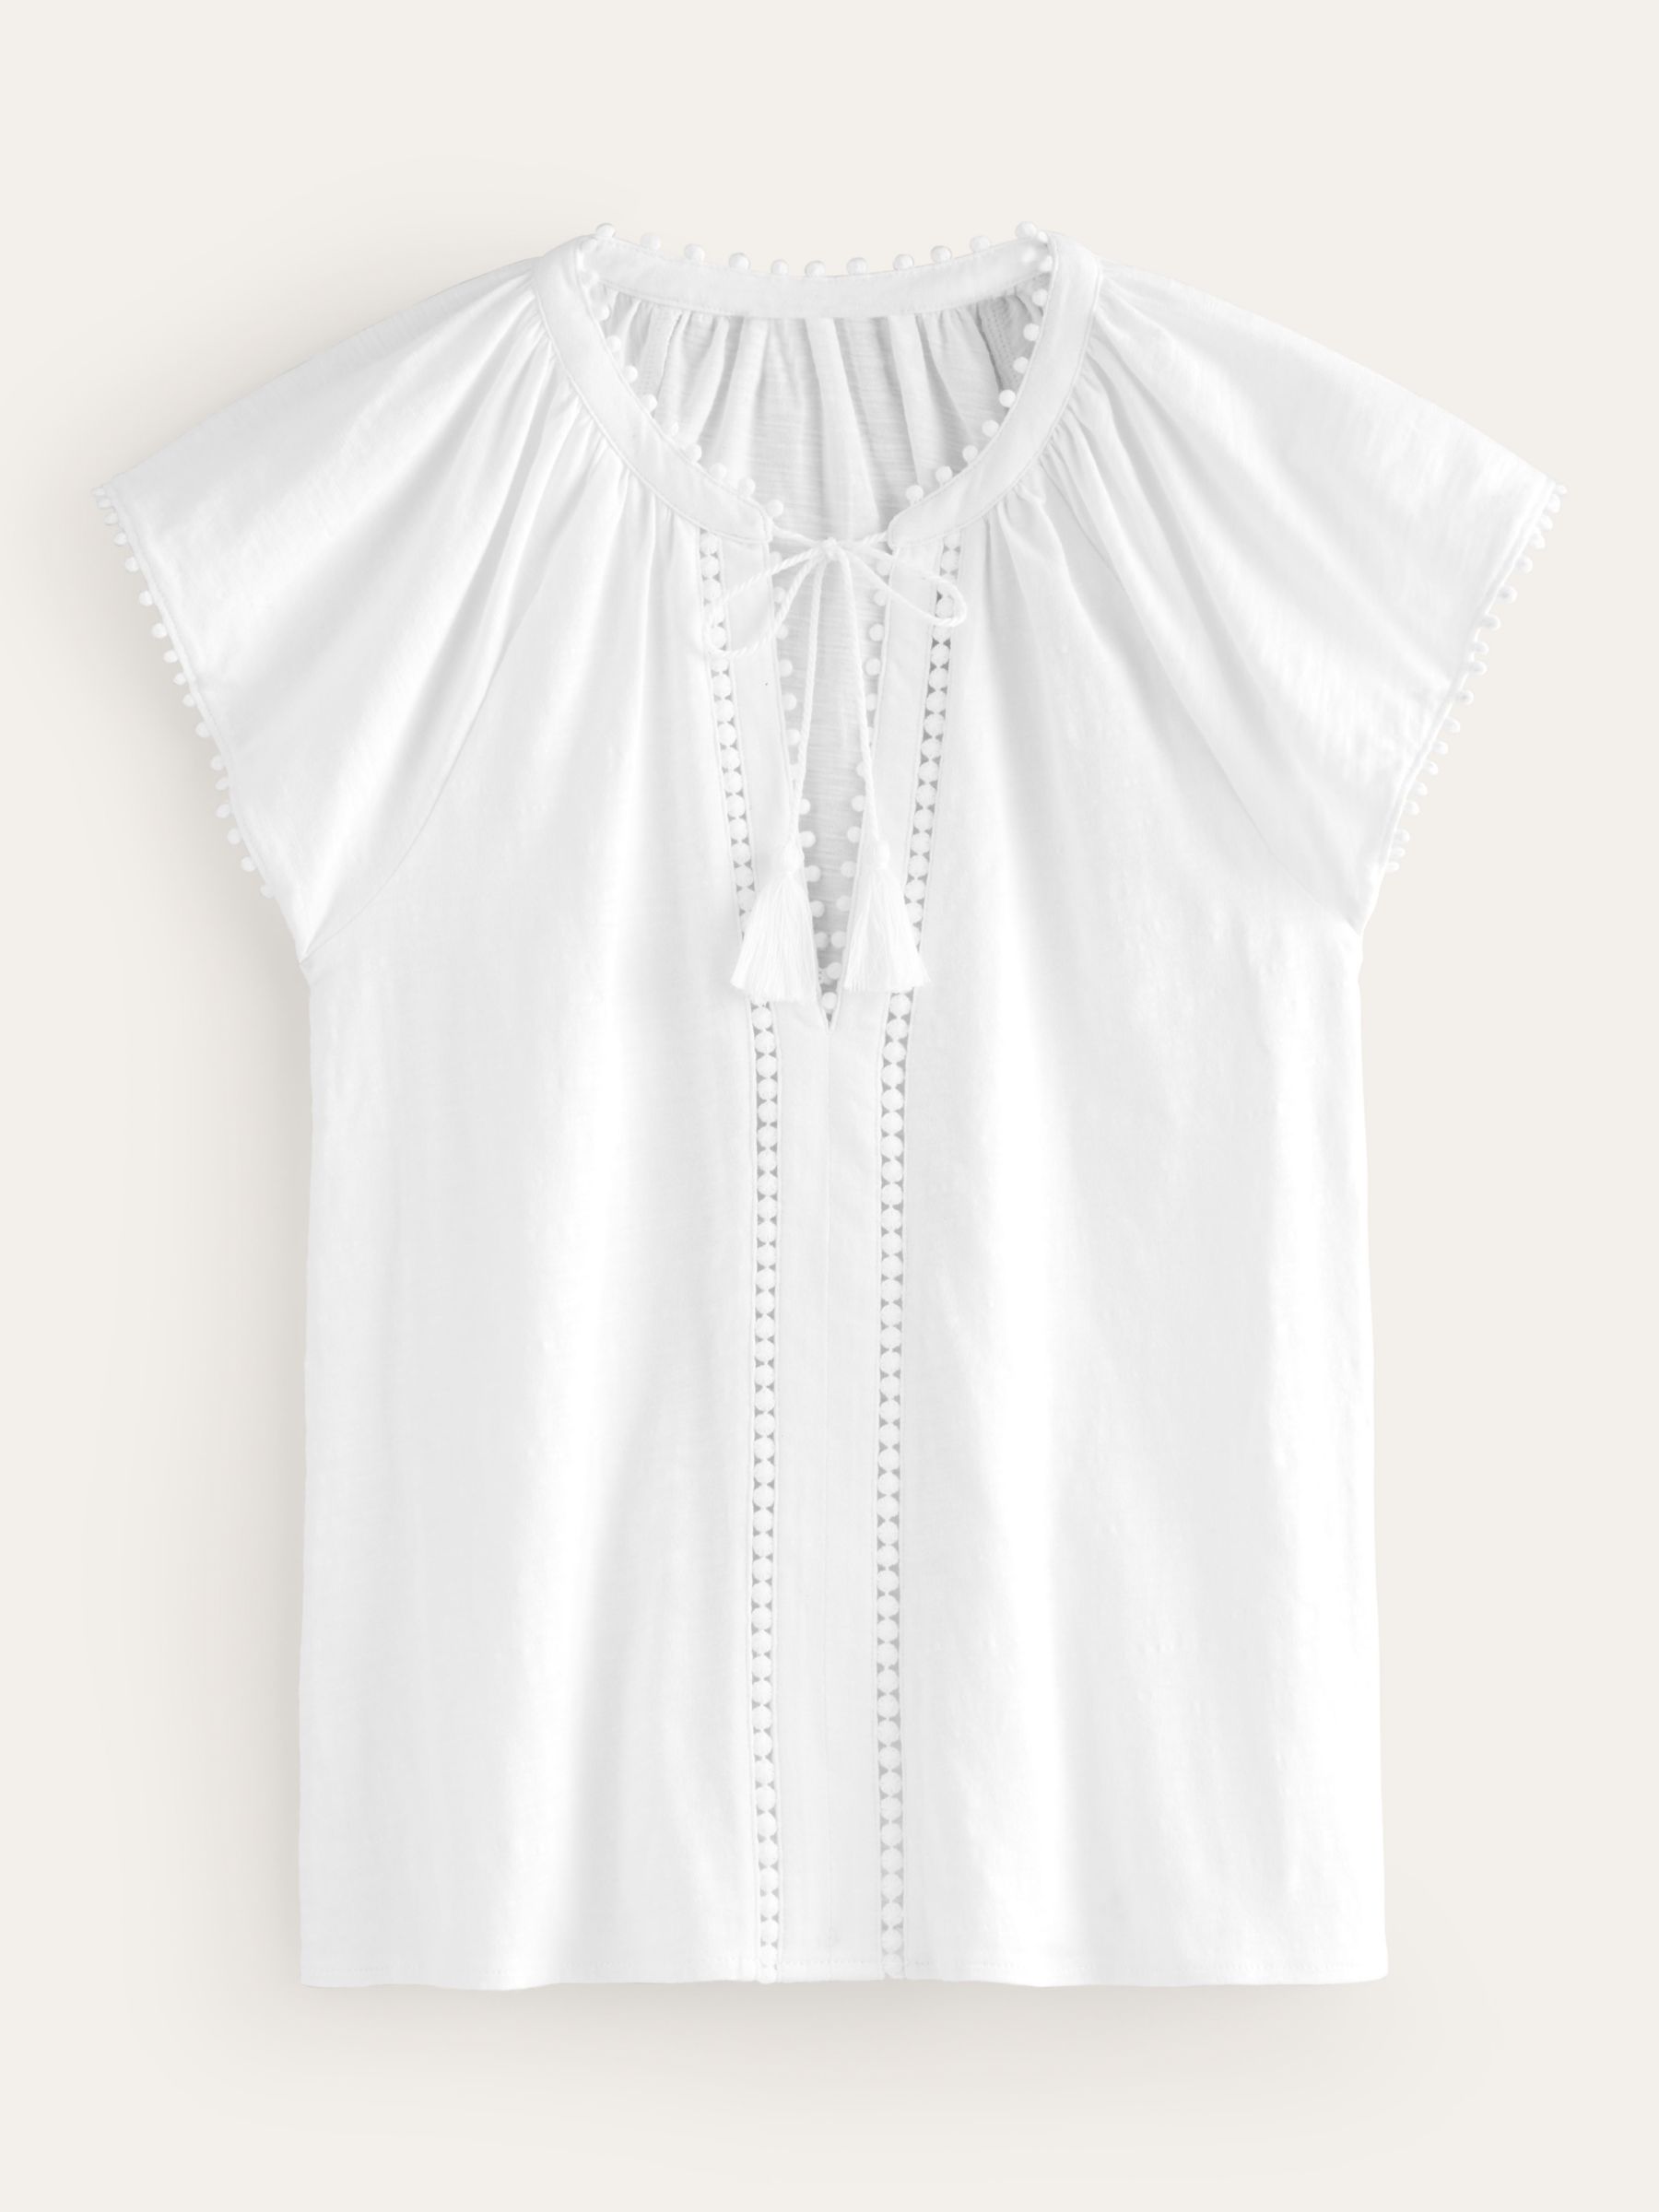 Boden Millie Lace Trim Detail Cotton Top, White, 8